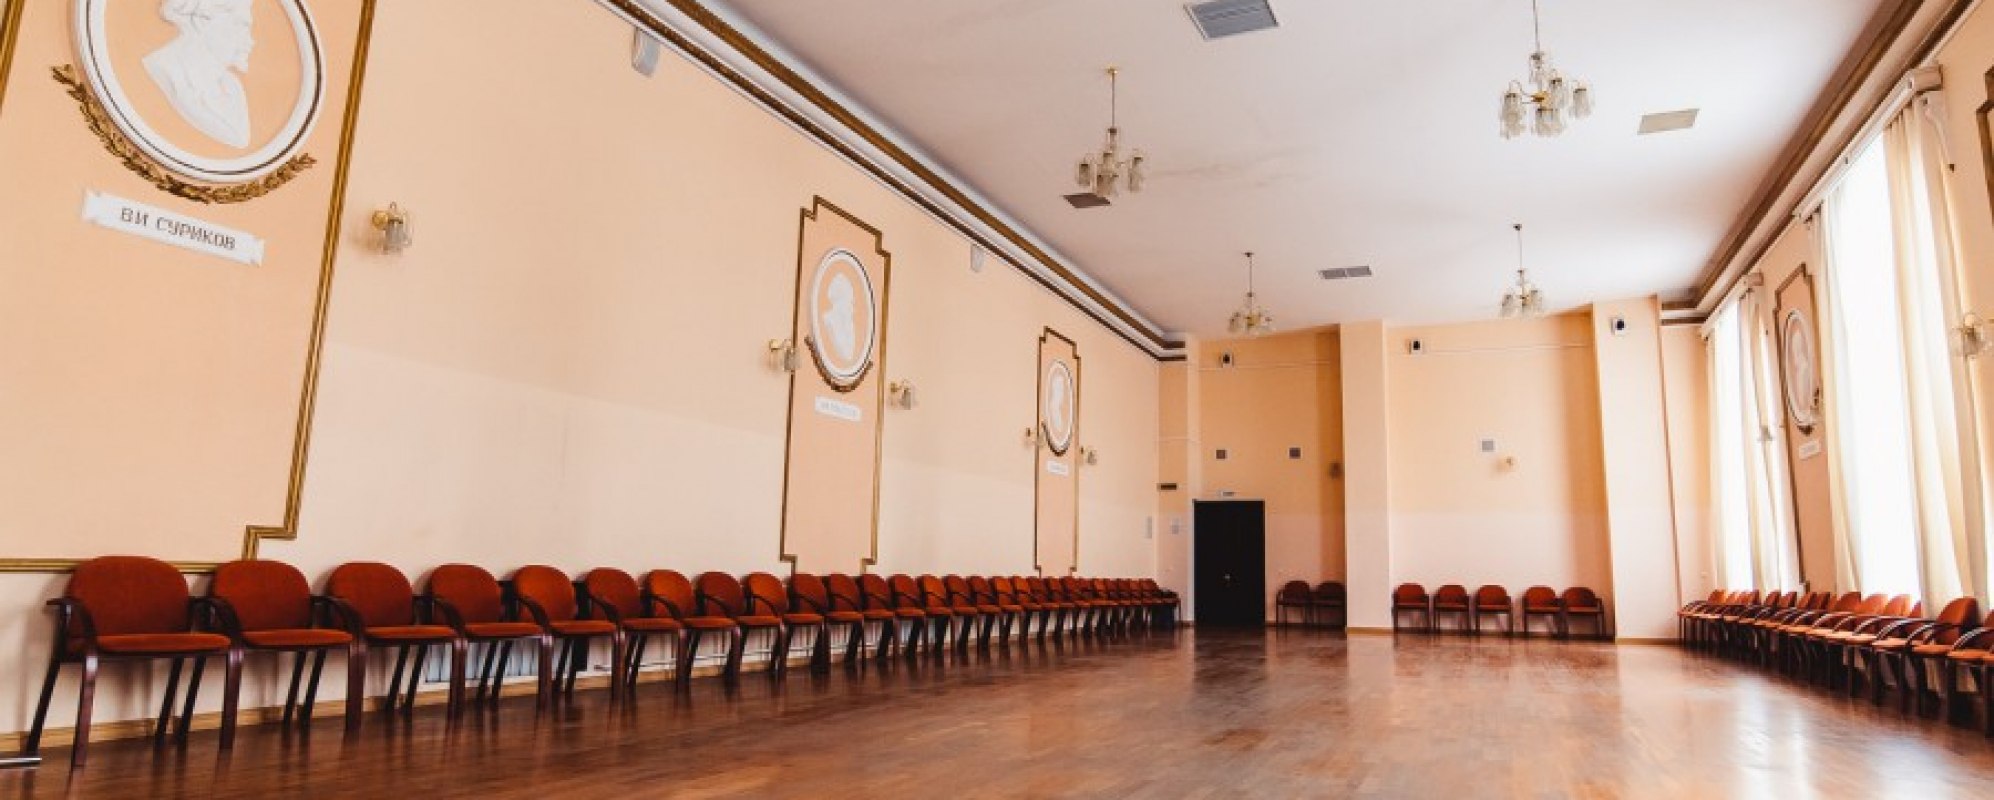 Фотографии банкетного зала Центр культуры и искусств Верх-Исетский Зал презентаций